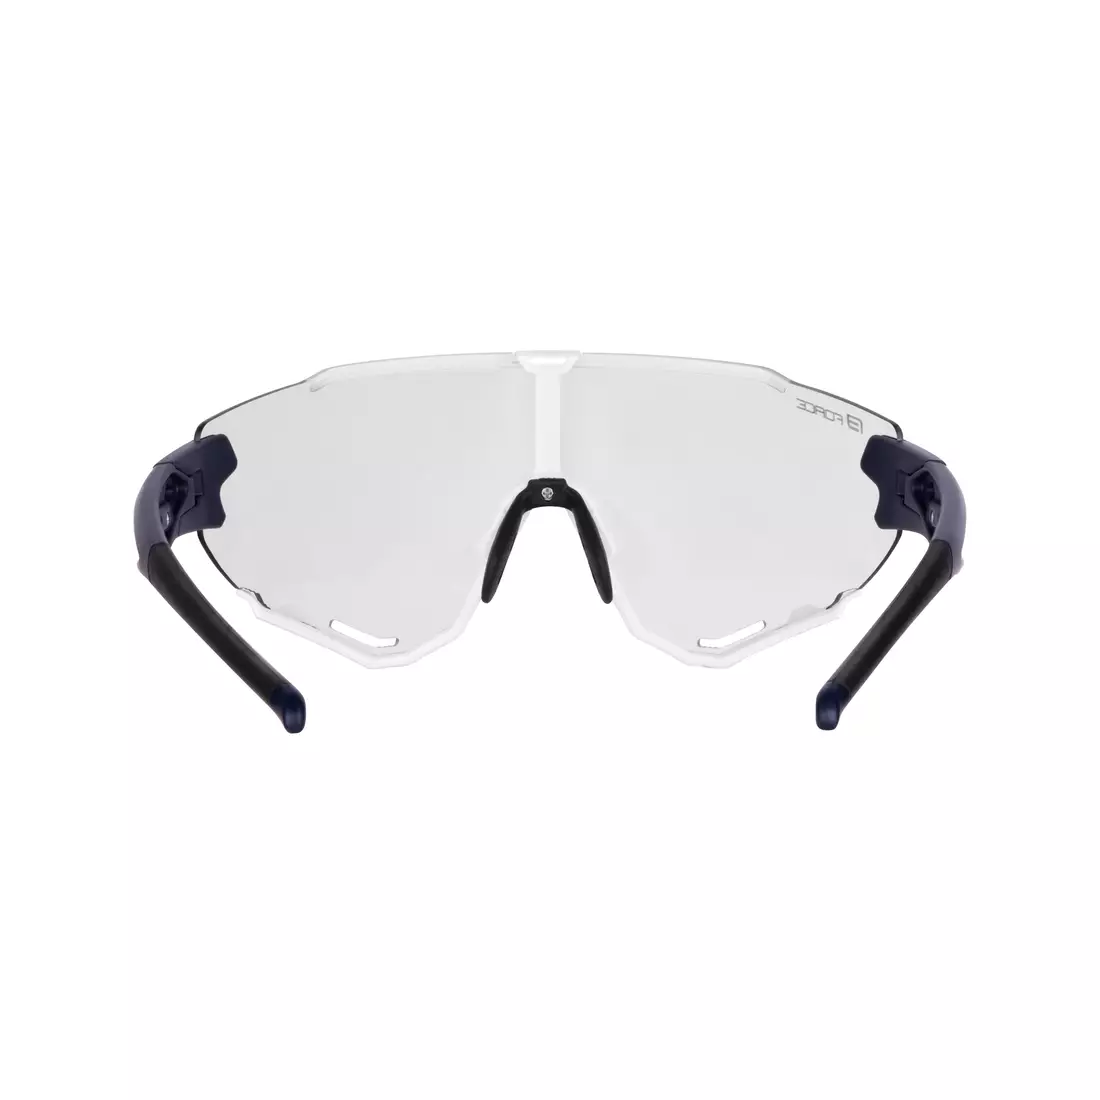 FORCE Sportovní fotochromatické brýle CREED, modrá a bílá 91186